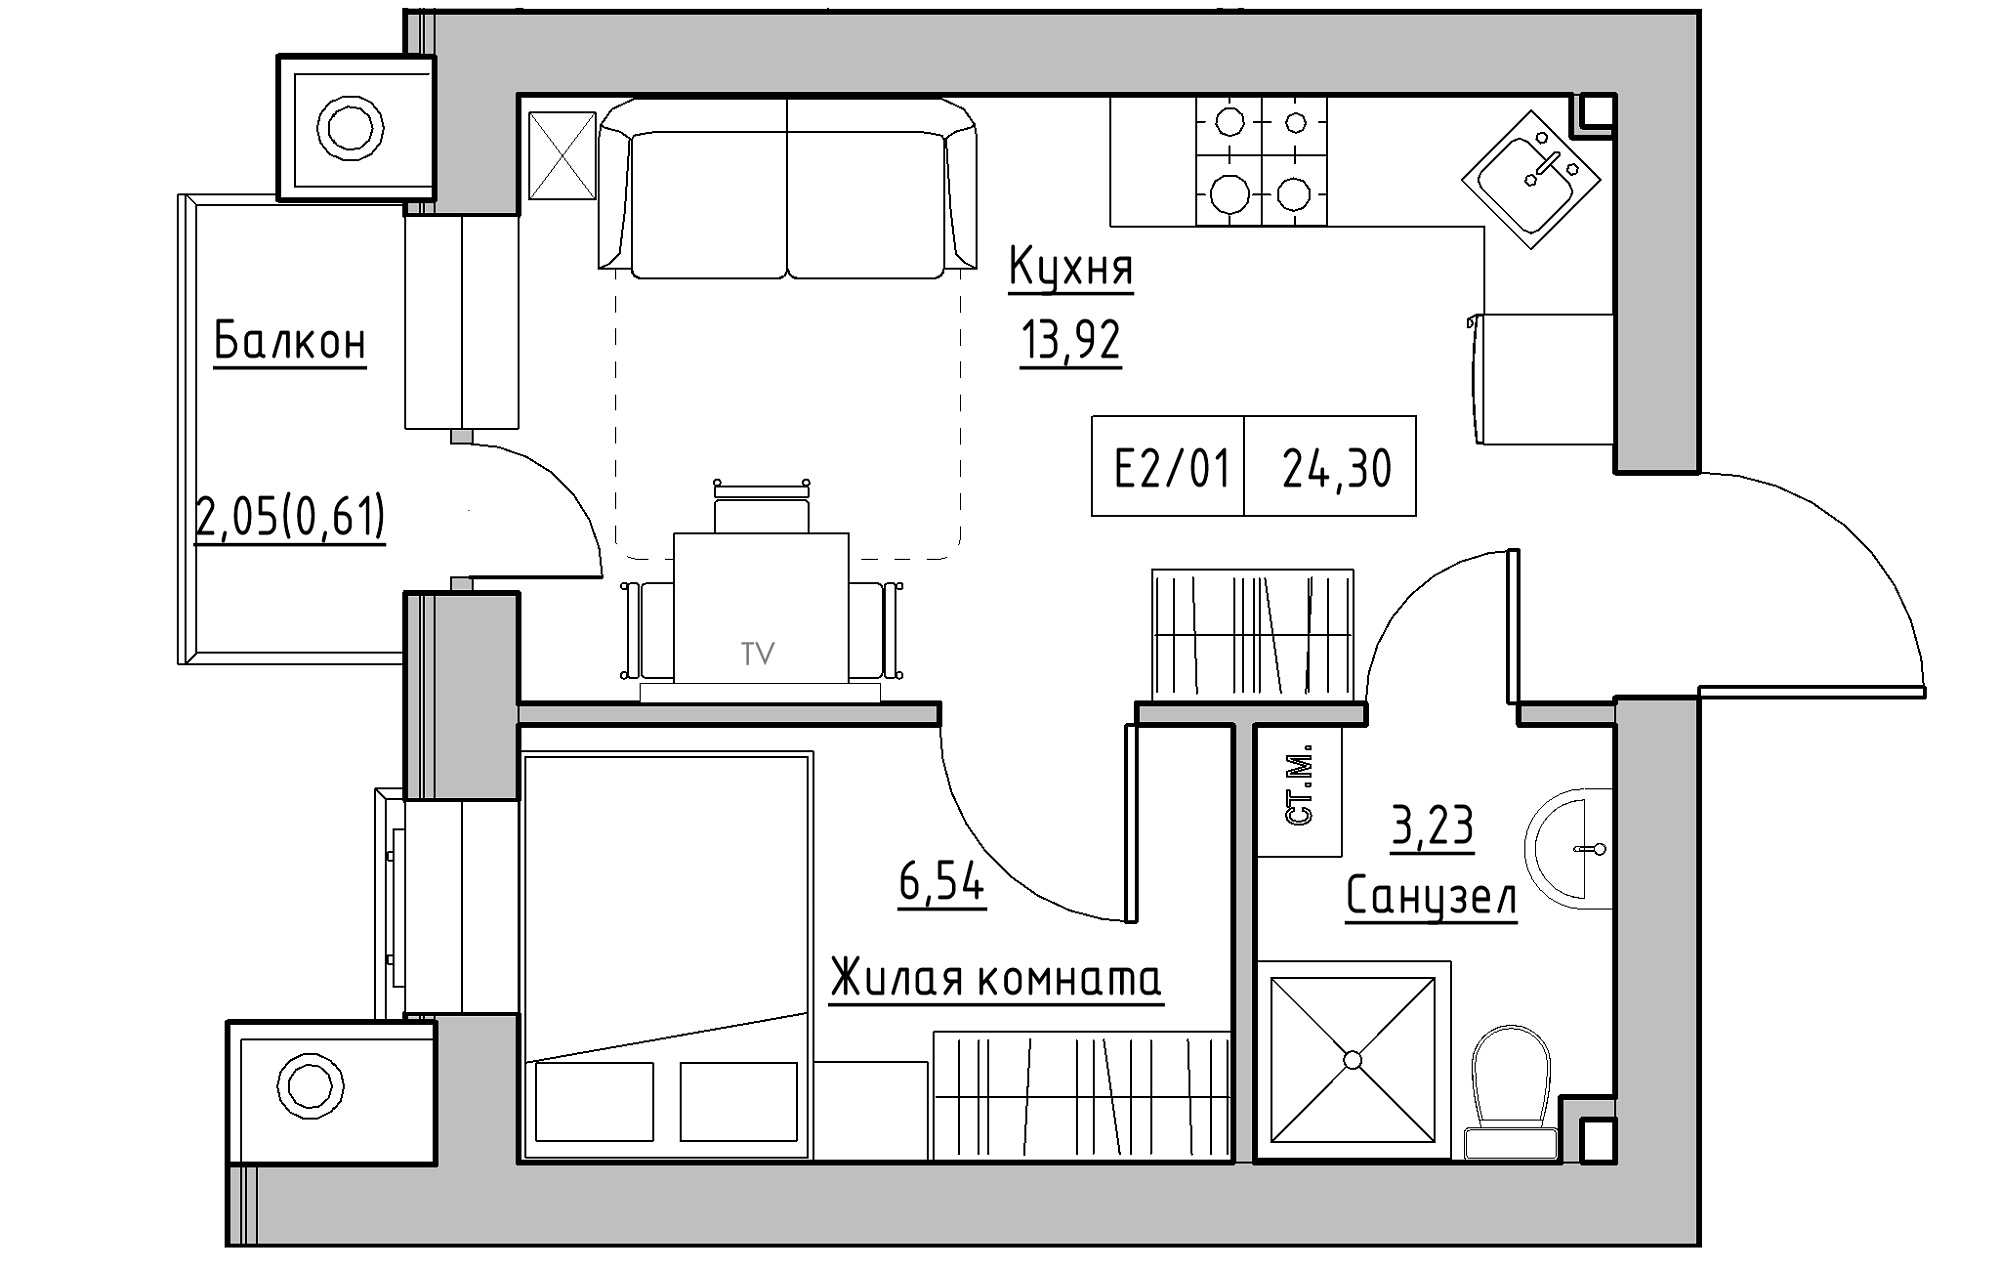 Планування 1-к квартира площею 24.3м2, KS-013-02/0005.